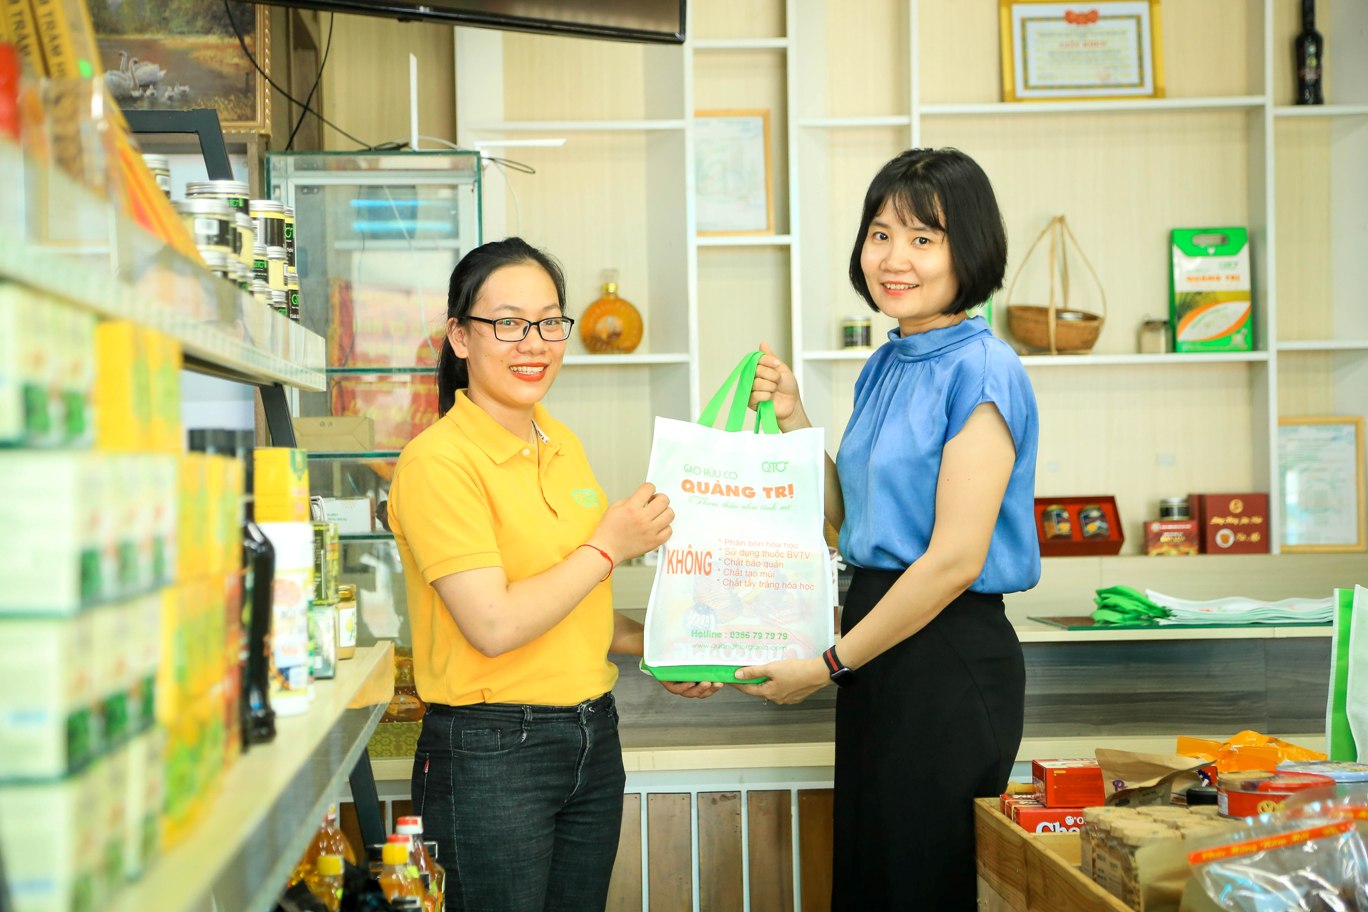 Siêu thị nông sản hữu cơ Quảng Trị tặng túi vải miễn phí cho khách hàng nhằm khuyến khích thay đổi thói quen dùng túi nilon, túi nhựa truyền thống khi mua sắm.